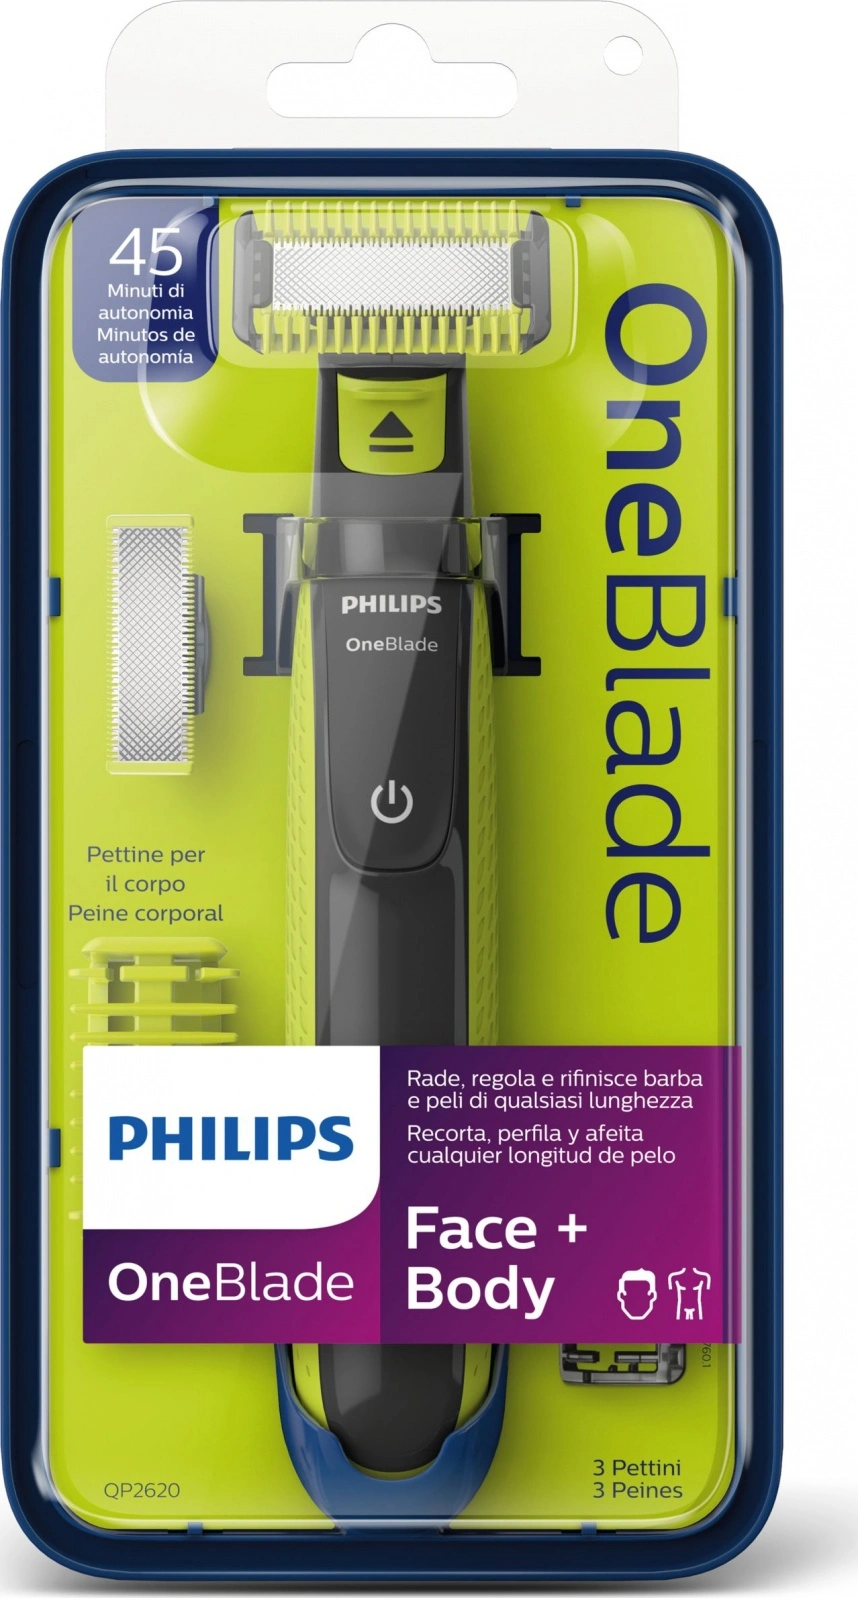 Philips OneBlade 360 QP2834/20 